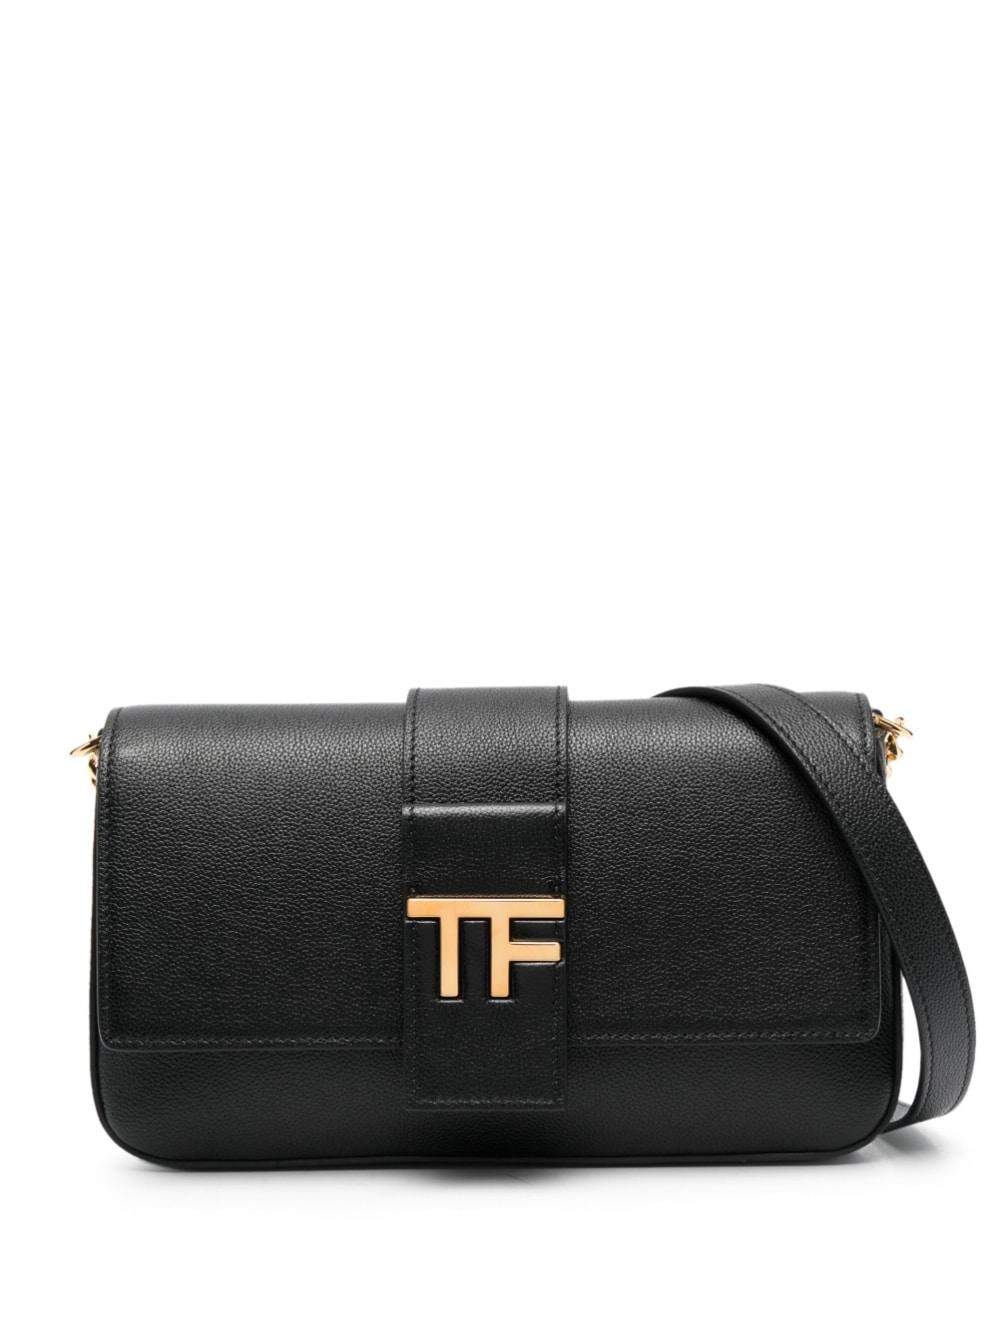 Tom Ford Tf Crossbody Bag in Black | Lyst Canada